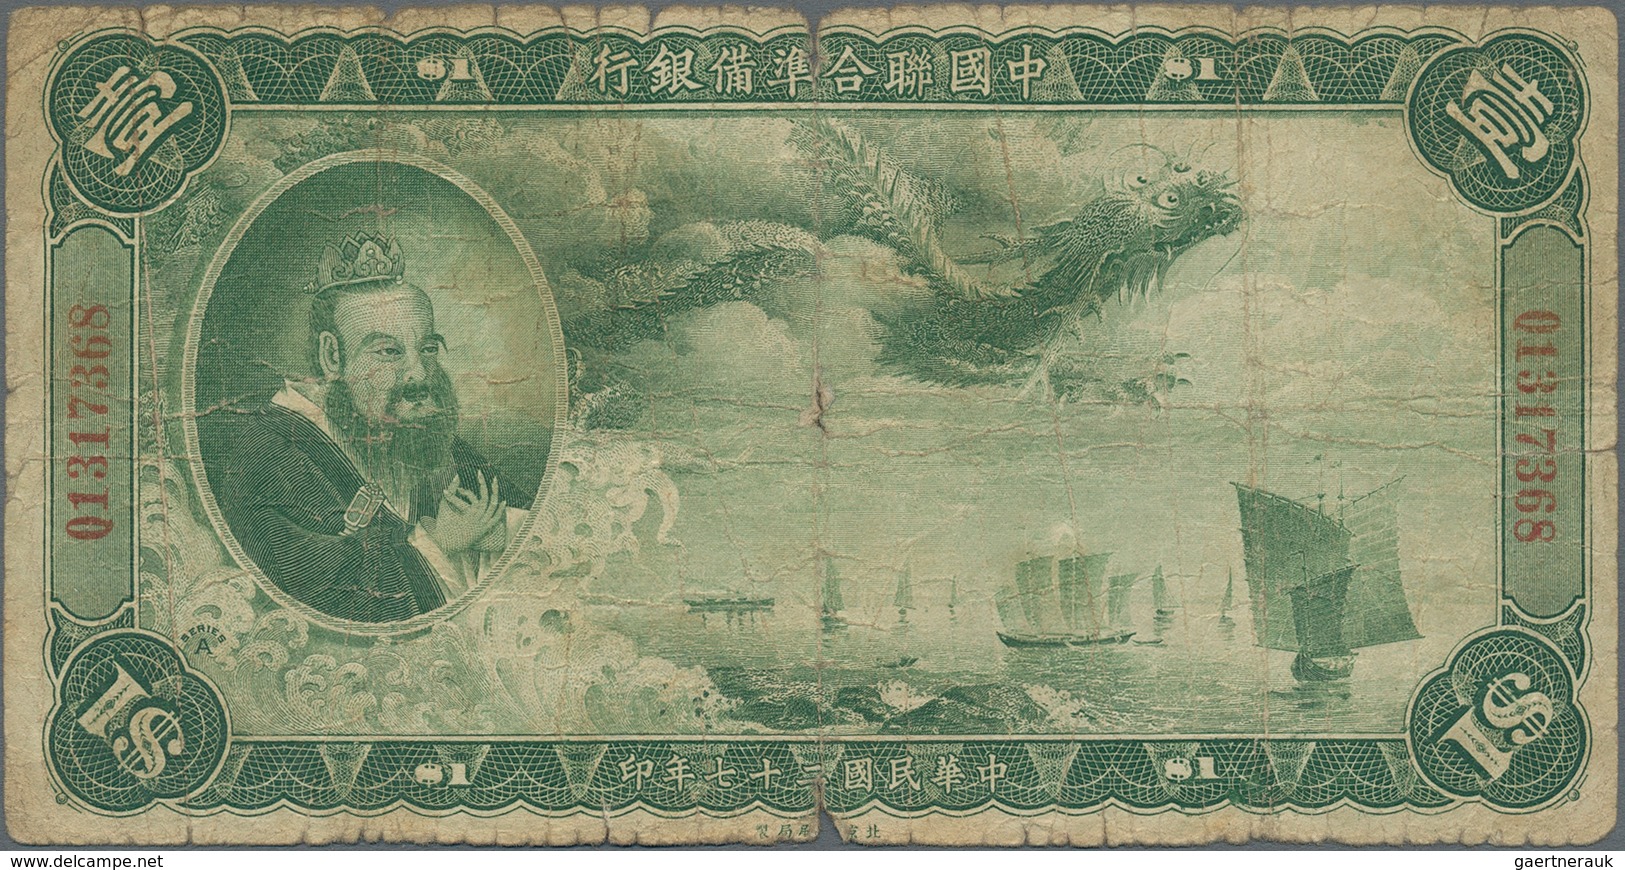 China: China Puppet Banks - Federal Reserve Bank Of China 1 Dollar 1938, P.J54, Rare And Seldom Offe - China